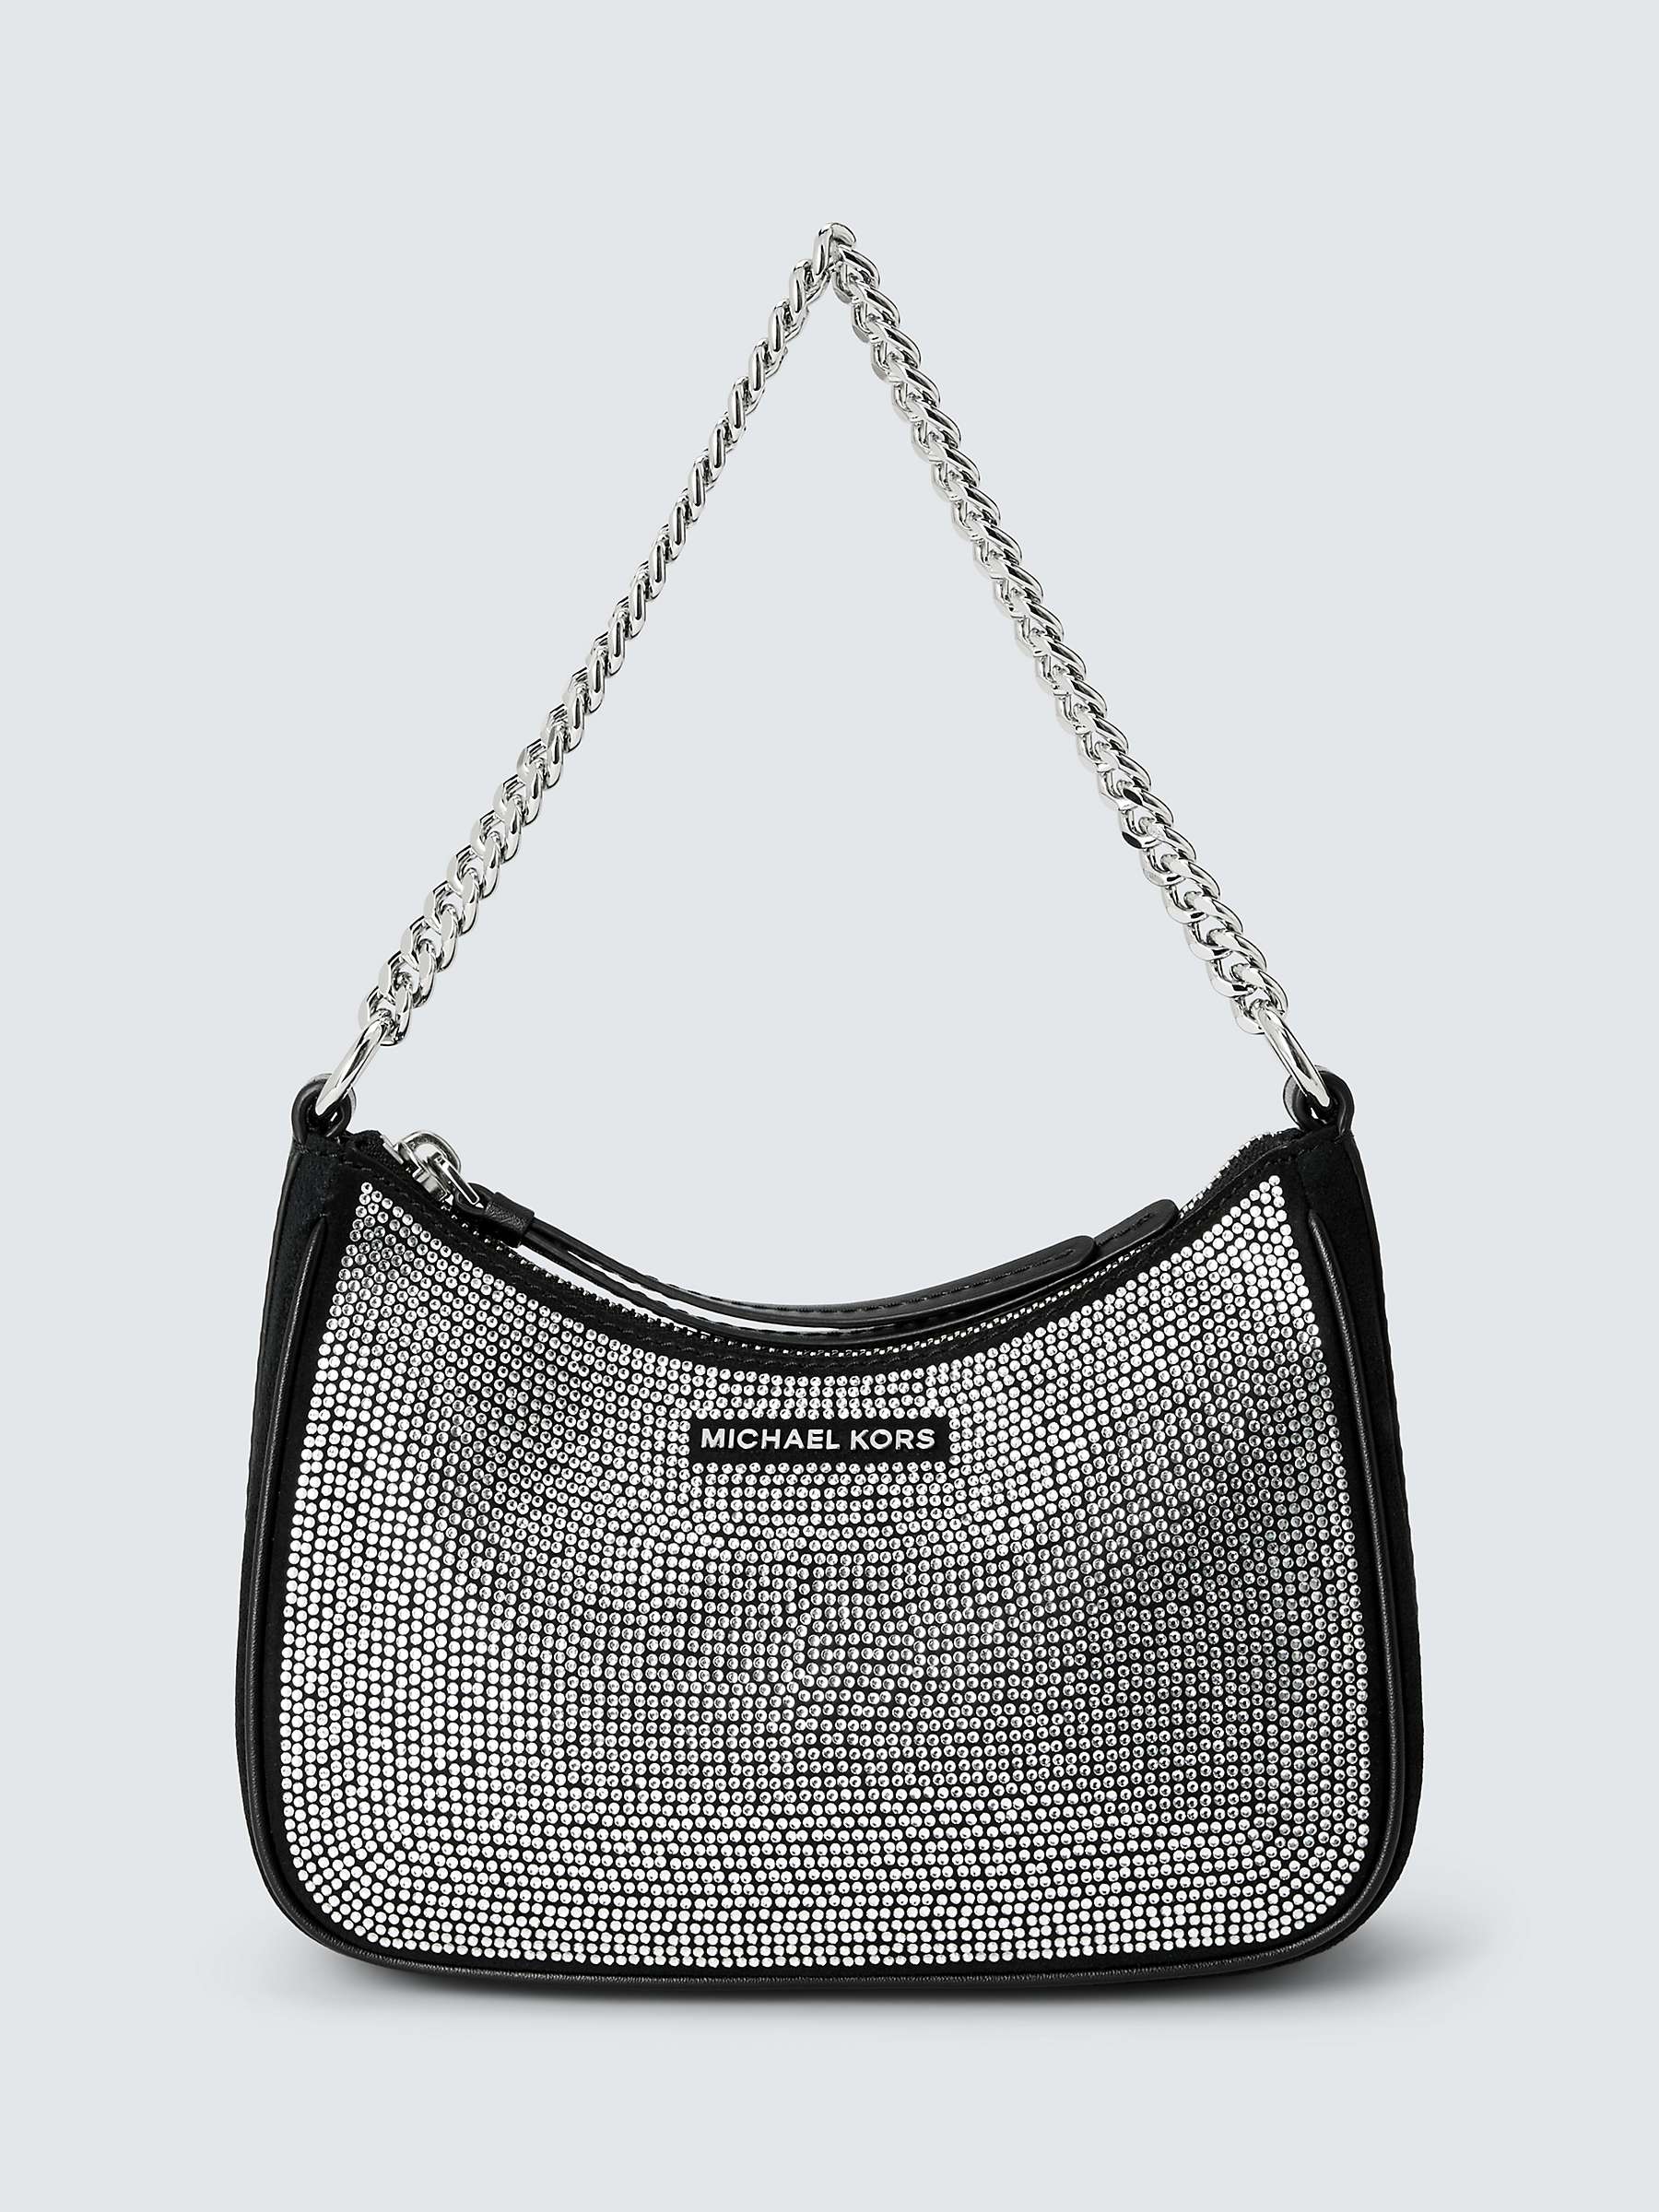 Michael Kors Chain Handle Embellished Shoulder Bag, Black/Silver at John  Lewis & Partners